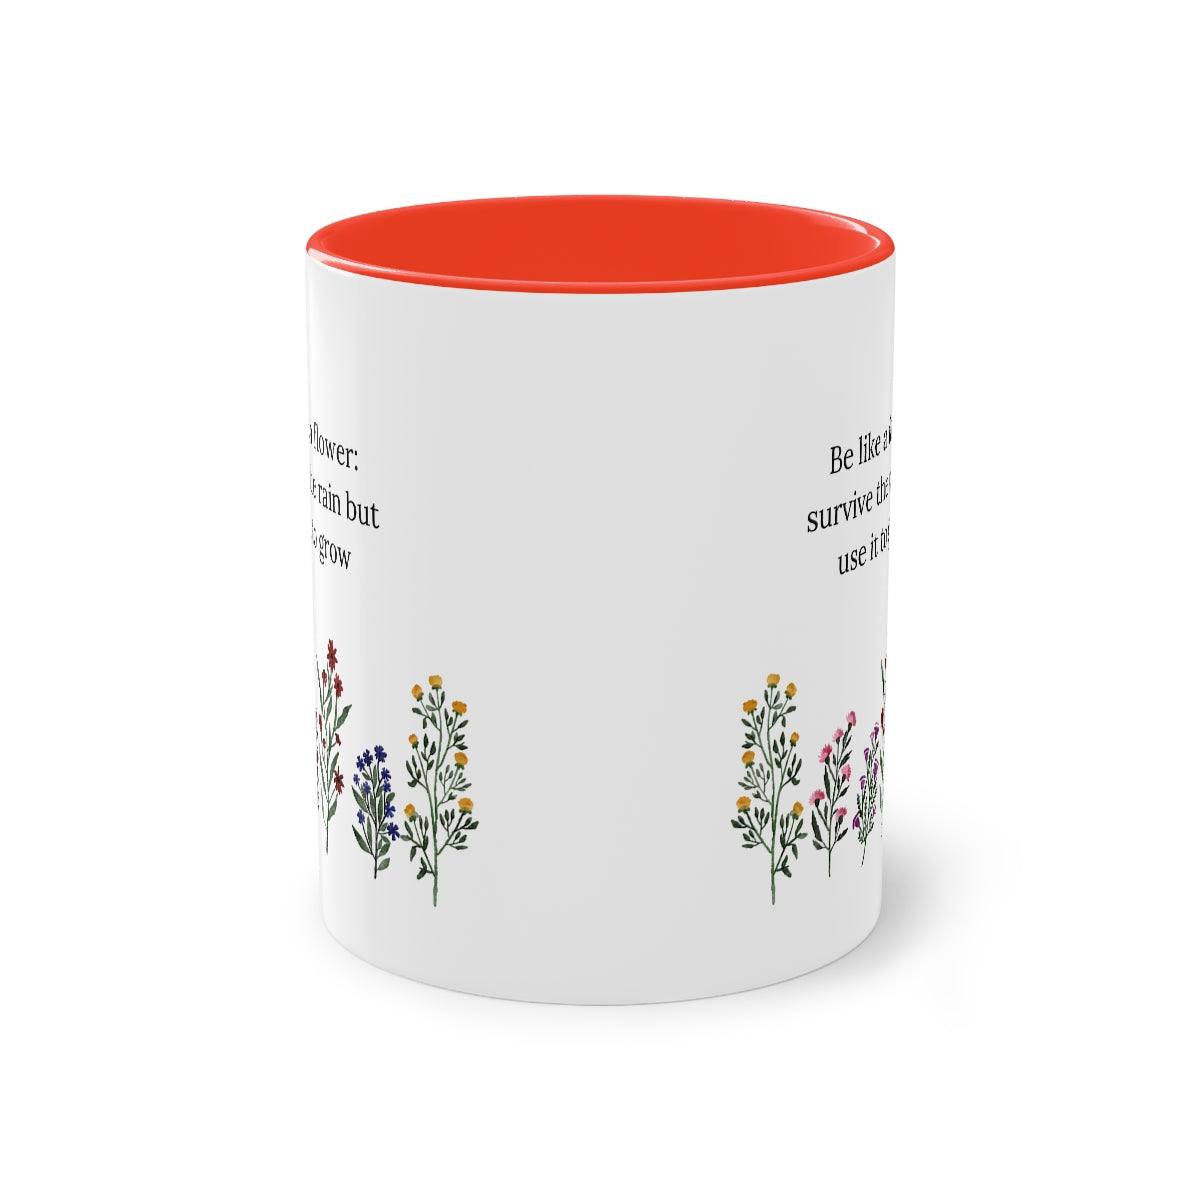 Be Like A Flower Two-Tone Coffee Mug, 11oz